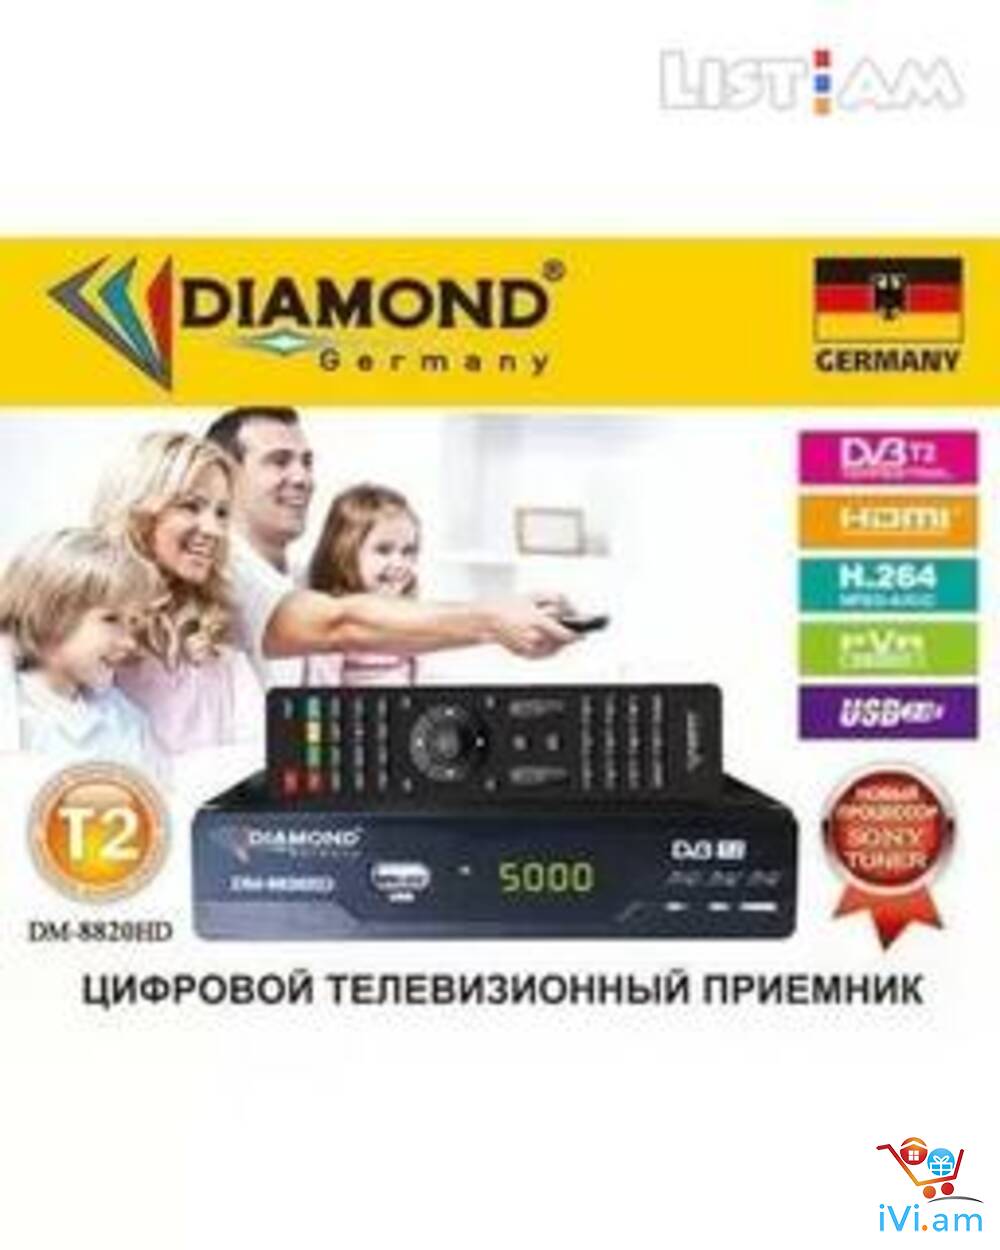 DVBT2 թվային ընդունիչ սարք DM-8820HD + անվճար առաքում և տեղադրում - Լուսանկար 1